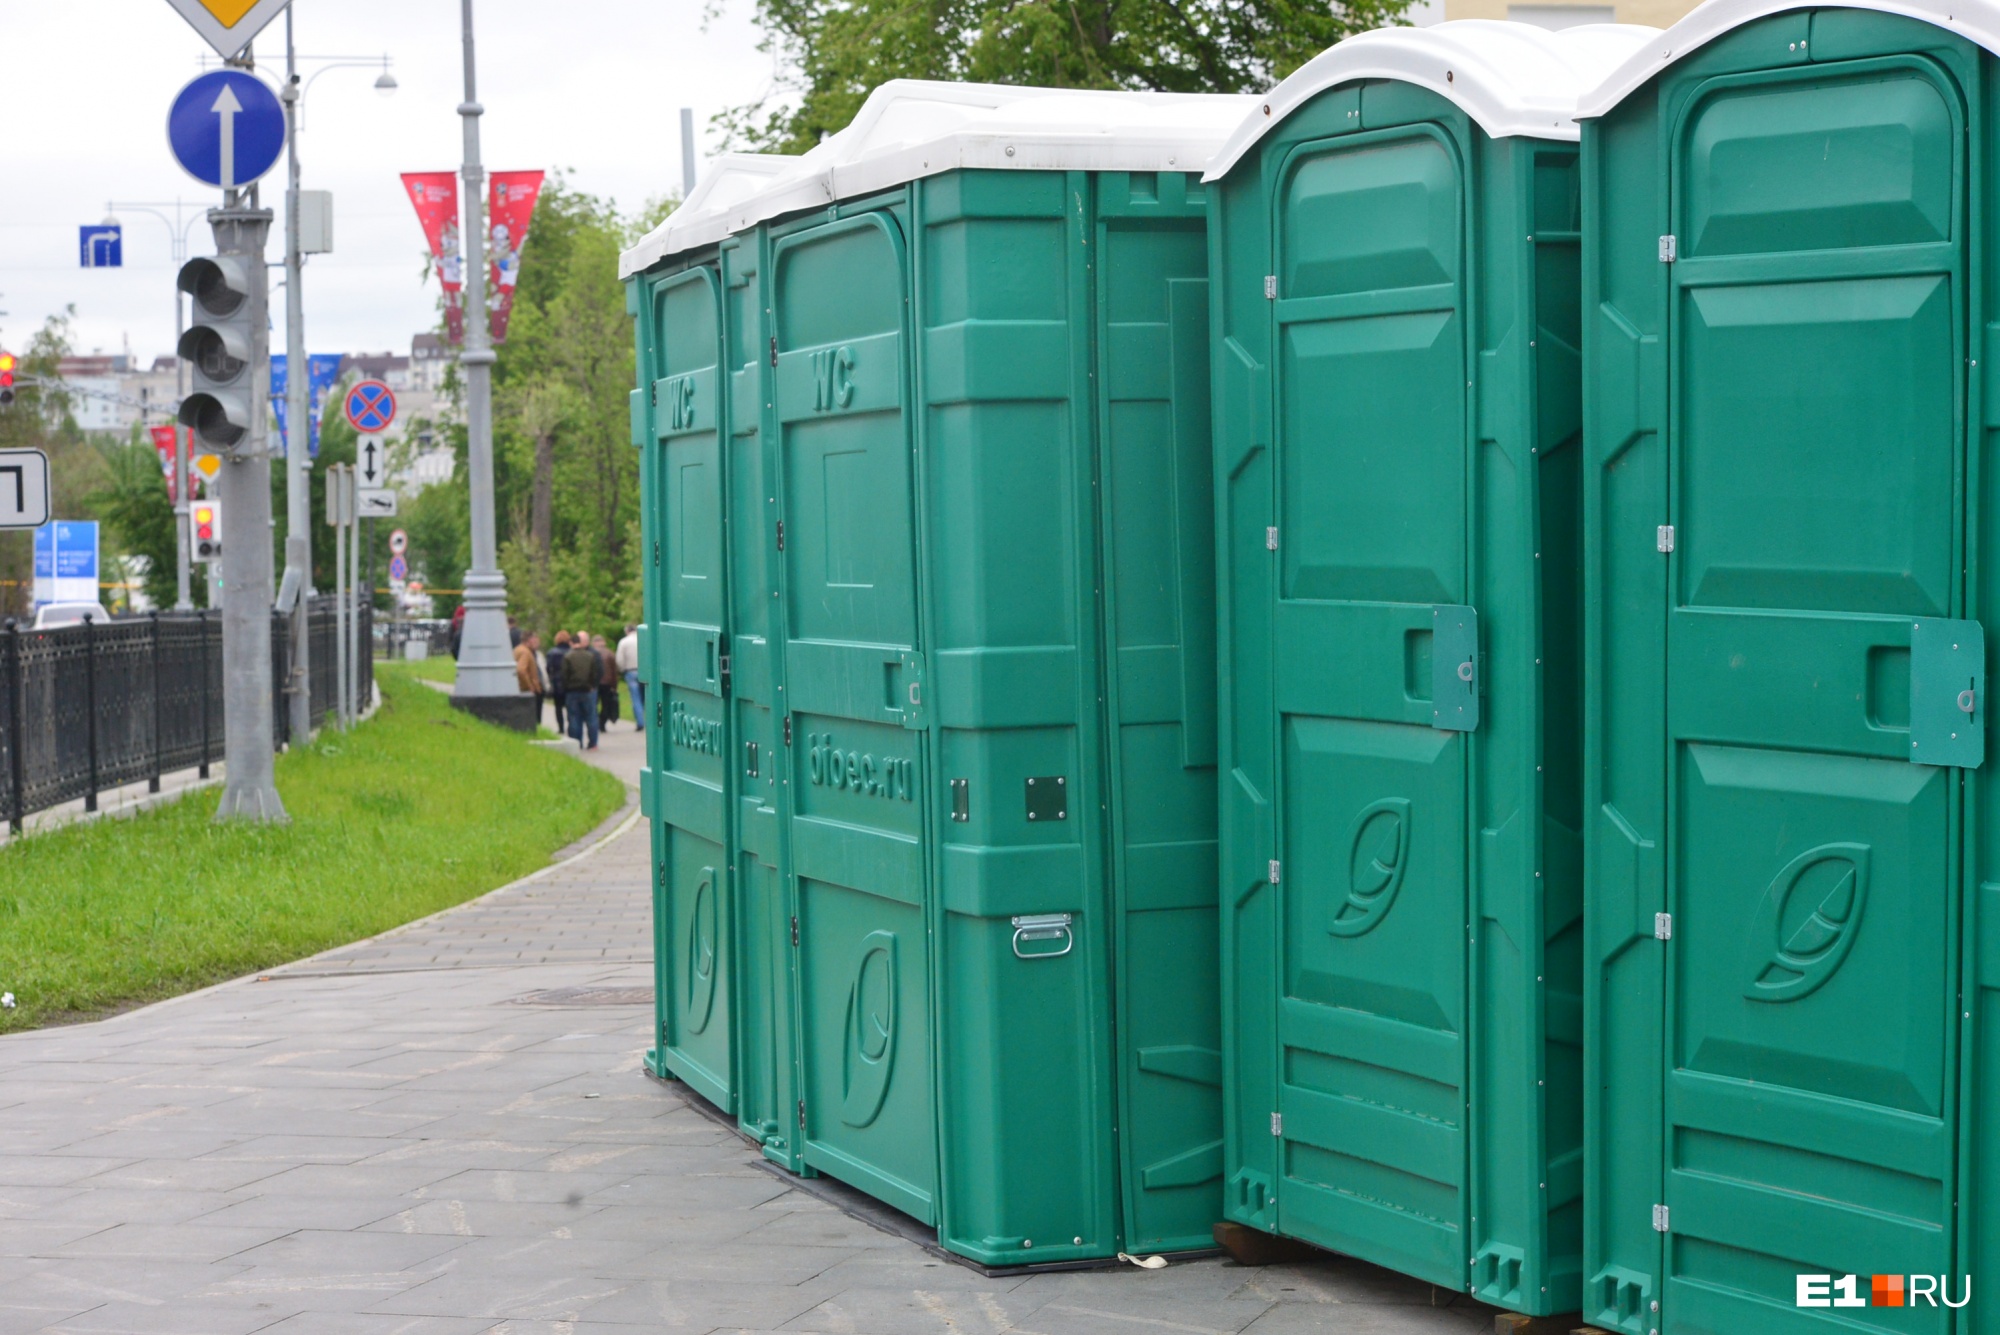 Александр Высокинский пообещал создать в Екатеринбурге сеть общественных туалетов